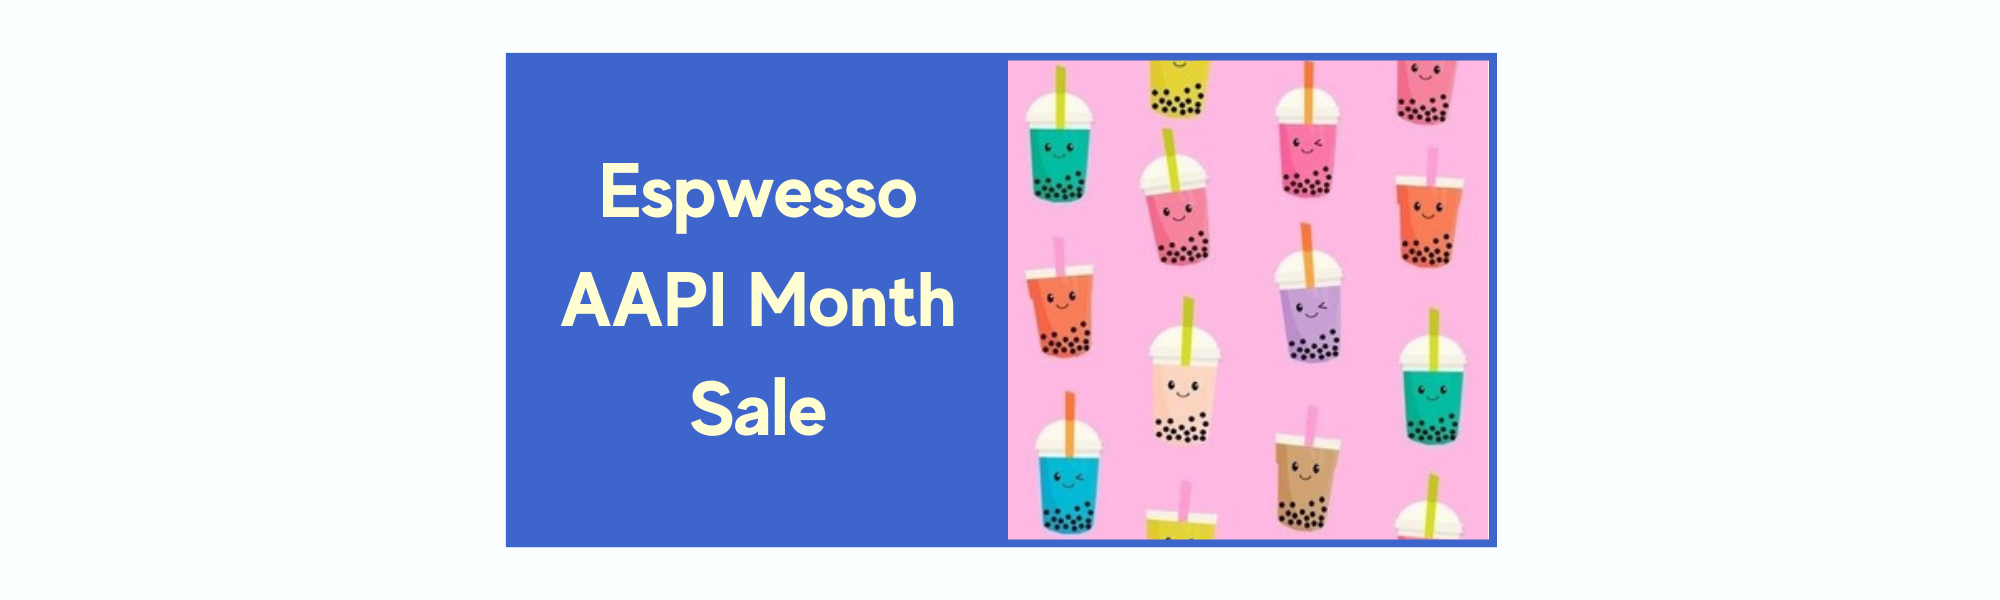 Espwesso-AAPI-Month-Sale.png